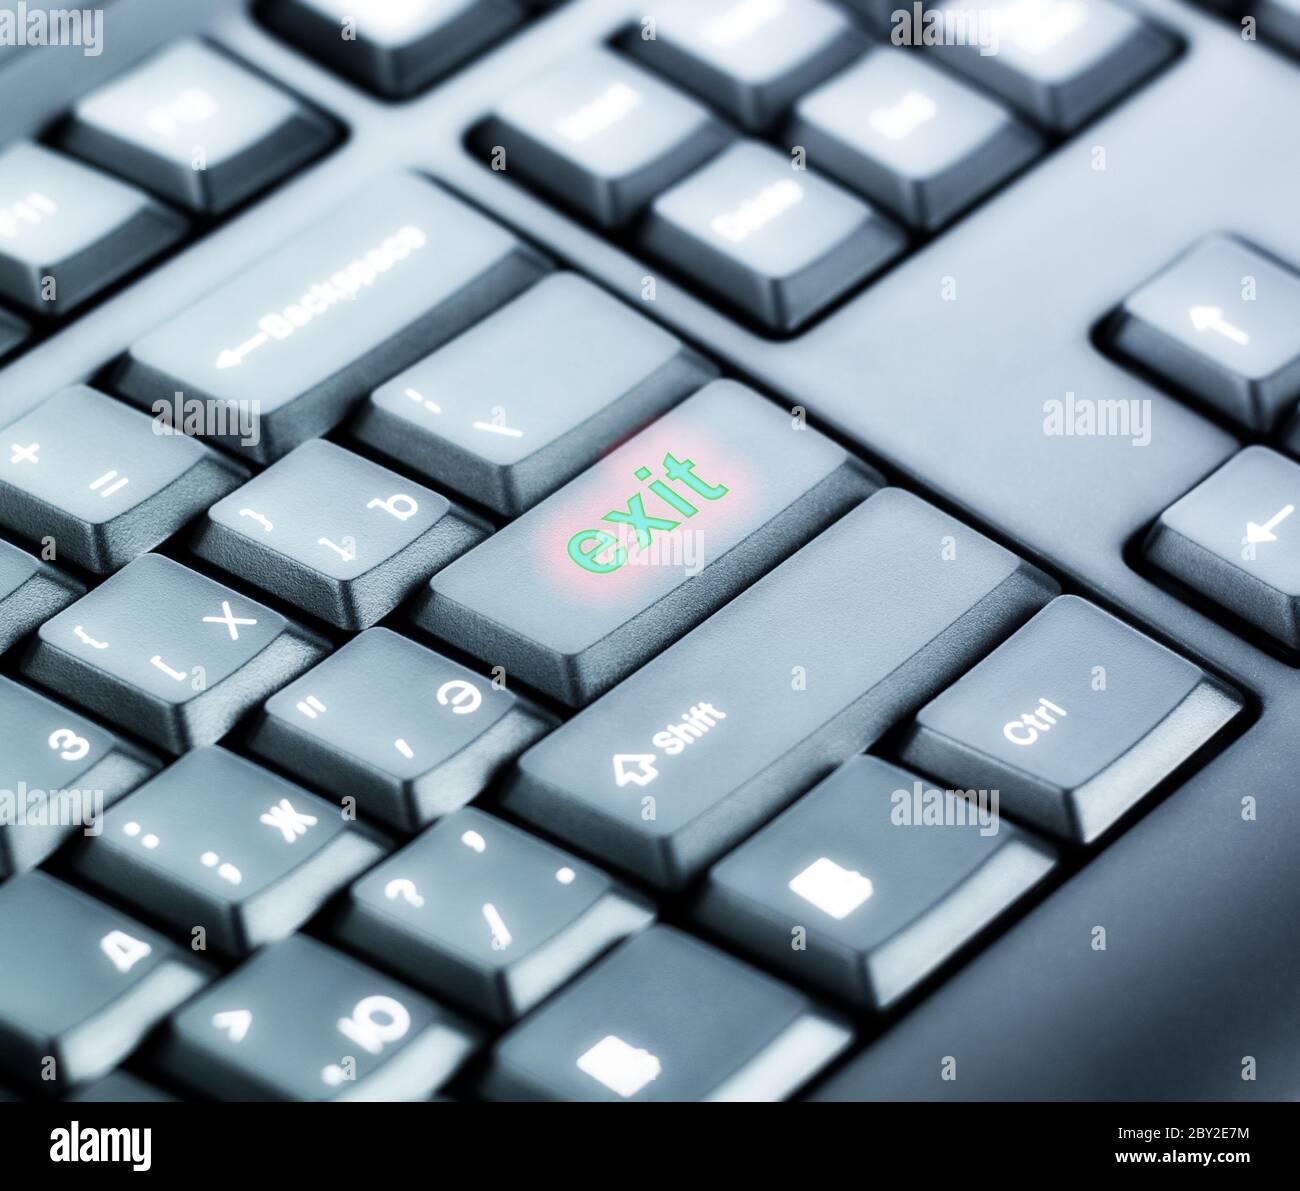 Tastatur mit Exit-Taste Stockfotografie - Alamy